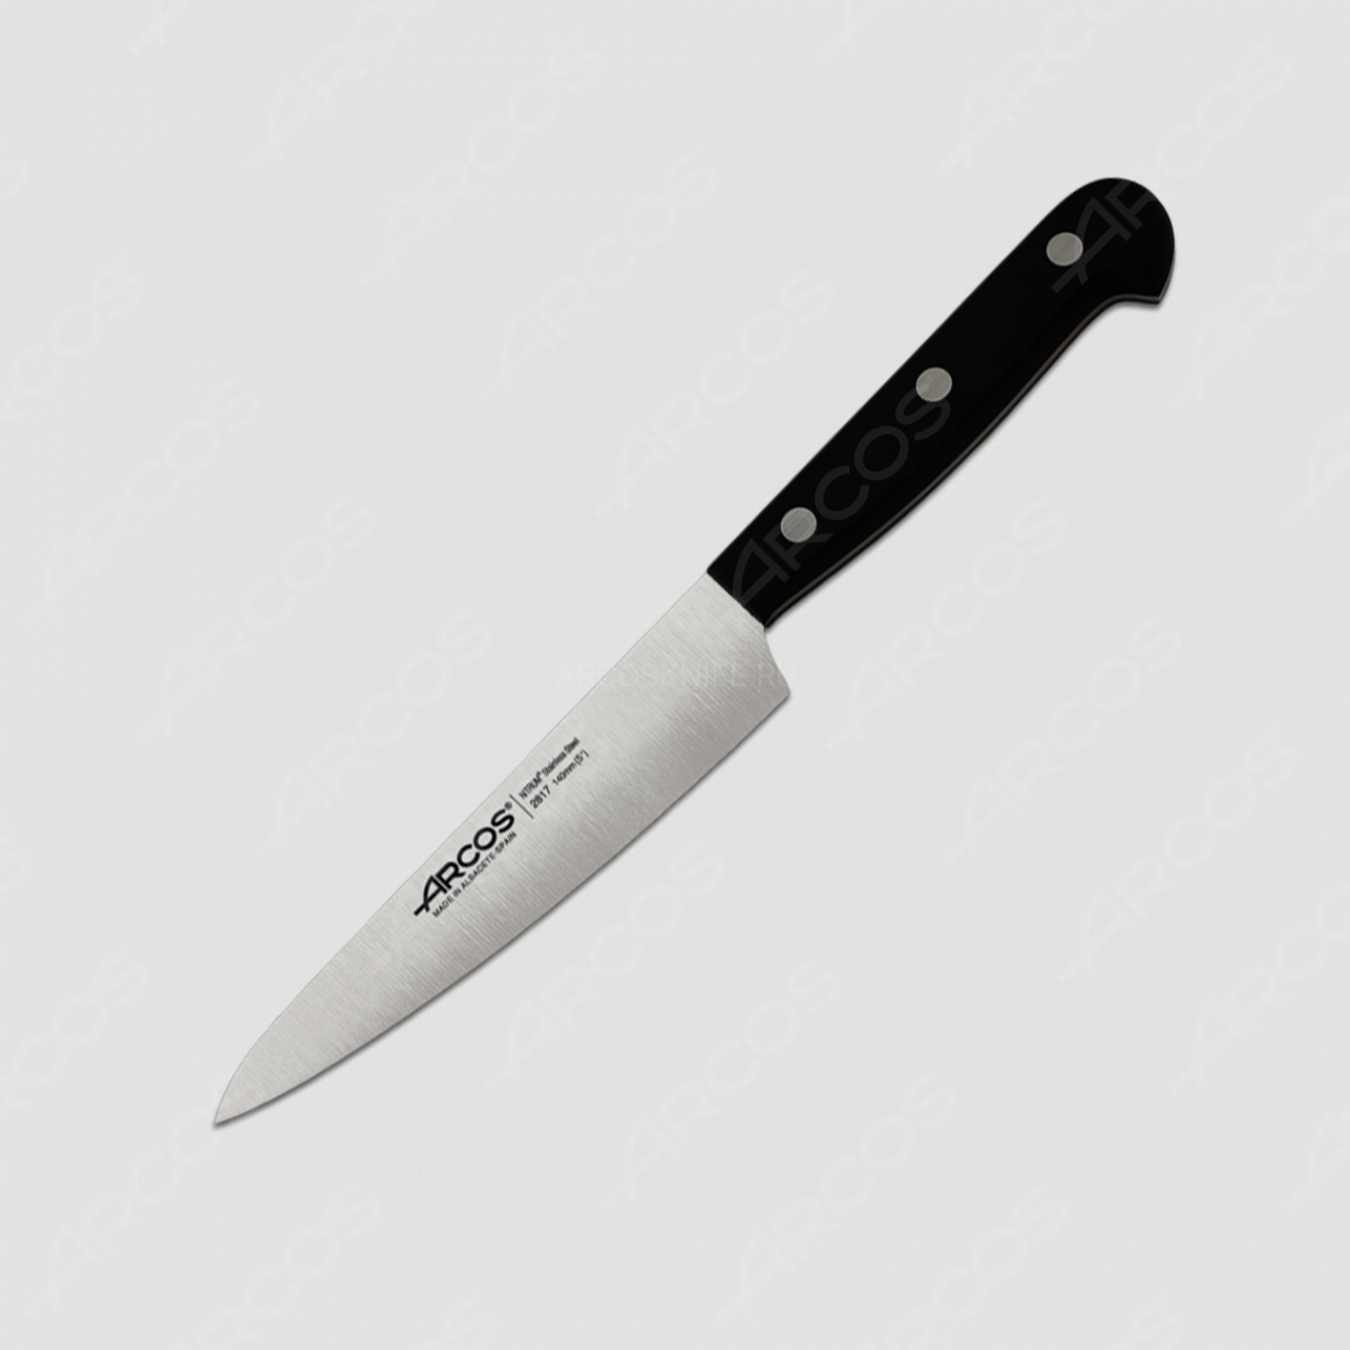 Профессиональный поварской кухонный нож 14 см, серия Universal, ARCOS, Испания